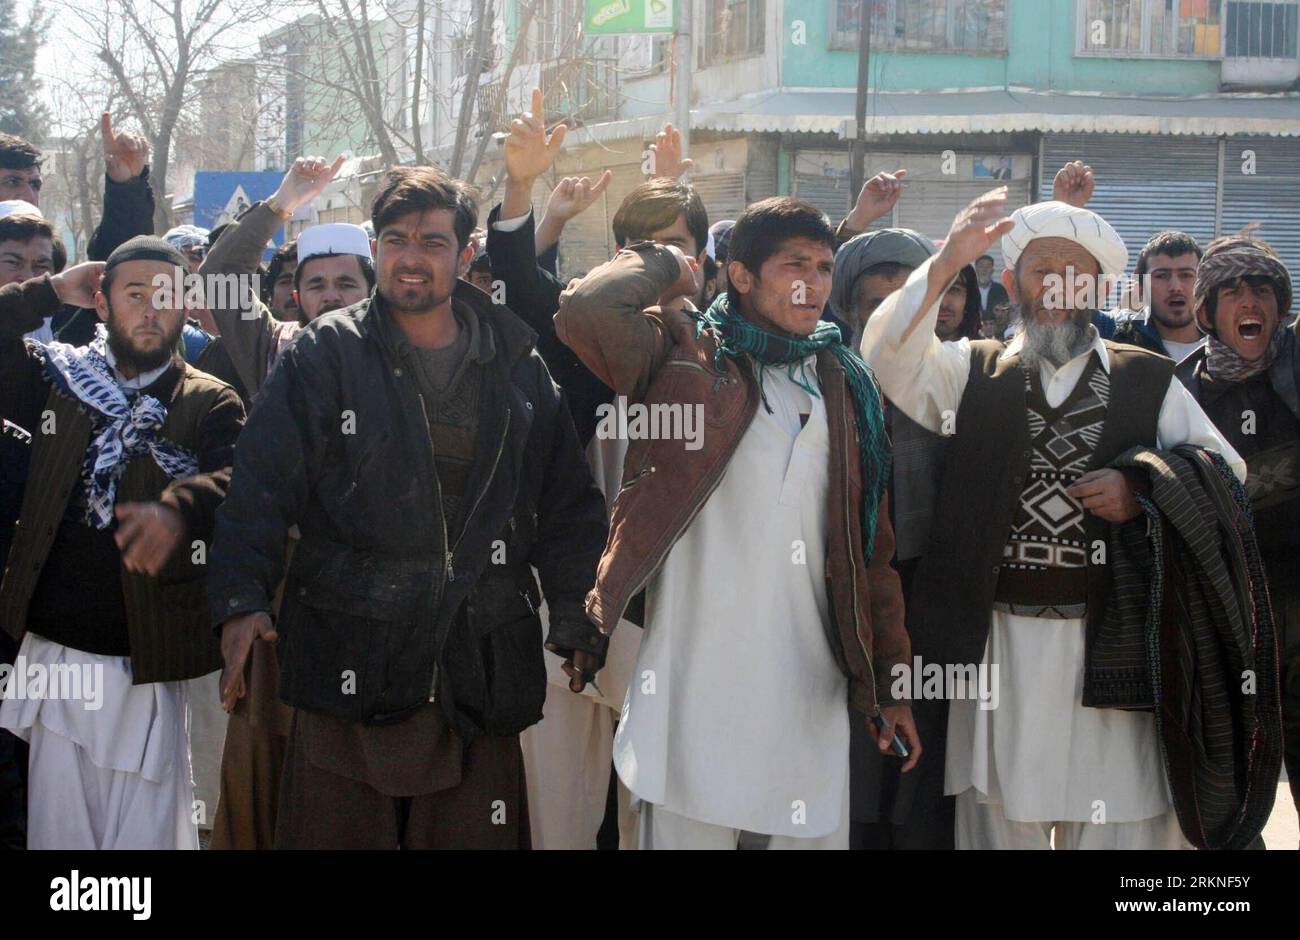 Bildnummer : 57109856 Datum : 25.02.2012 Copyright : imago/Xinhua (120226) -- KUNDUZ, 26 février 2012 (Xinhua) -- les manifestants afghans protestent contre la profanation du Coran dans la province de Kunduz, Afghanistan, 25 février 2012. Une personne a été tuée et plus de deux douzaines d'autres ont été blessées alors que les manifestations contre les incendies présumés du Coran ont repris dimanche dans certaines parties de la province de Kunduz, à 250 km au nord de la capitale kaboul, a indiqué la police. (Xinhua/Fulad)(zcc) AFGHANISTAN-KUNDUZ-QURAN-PROTEST PUBLICATIONxNOTxINxCHN Gesellschaft x2x xsk 2012 quer o0 Politik, Demo, Protest, Coran, Verbrennung, Koranverbrennung 5710985 Banque D'Images